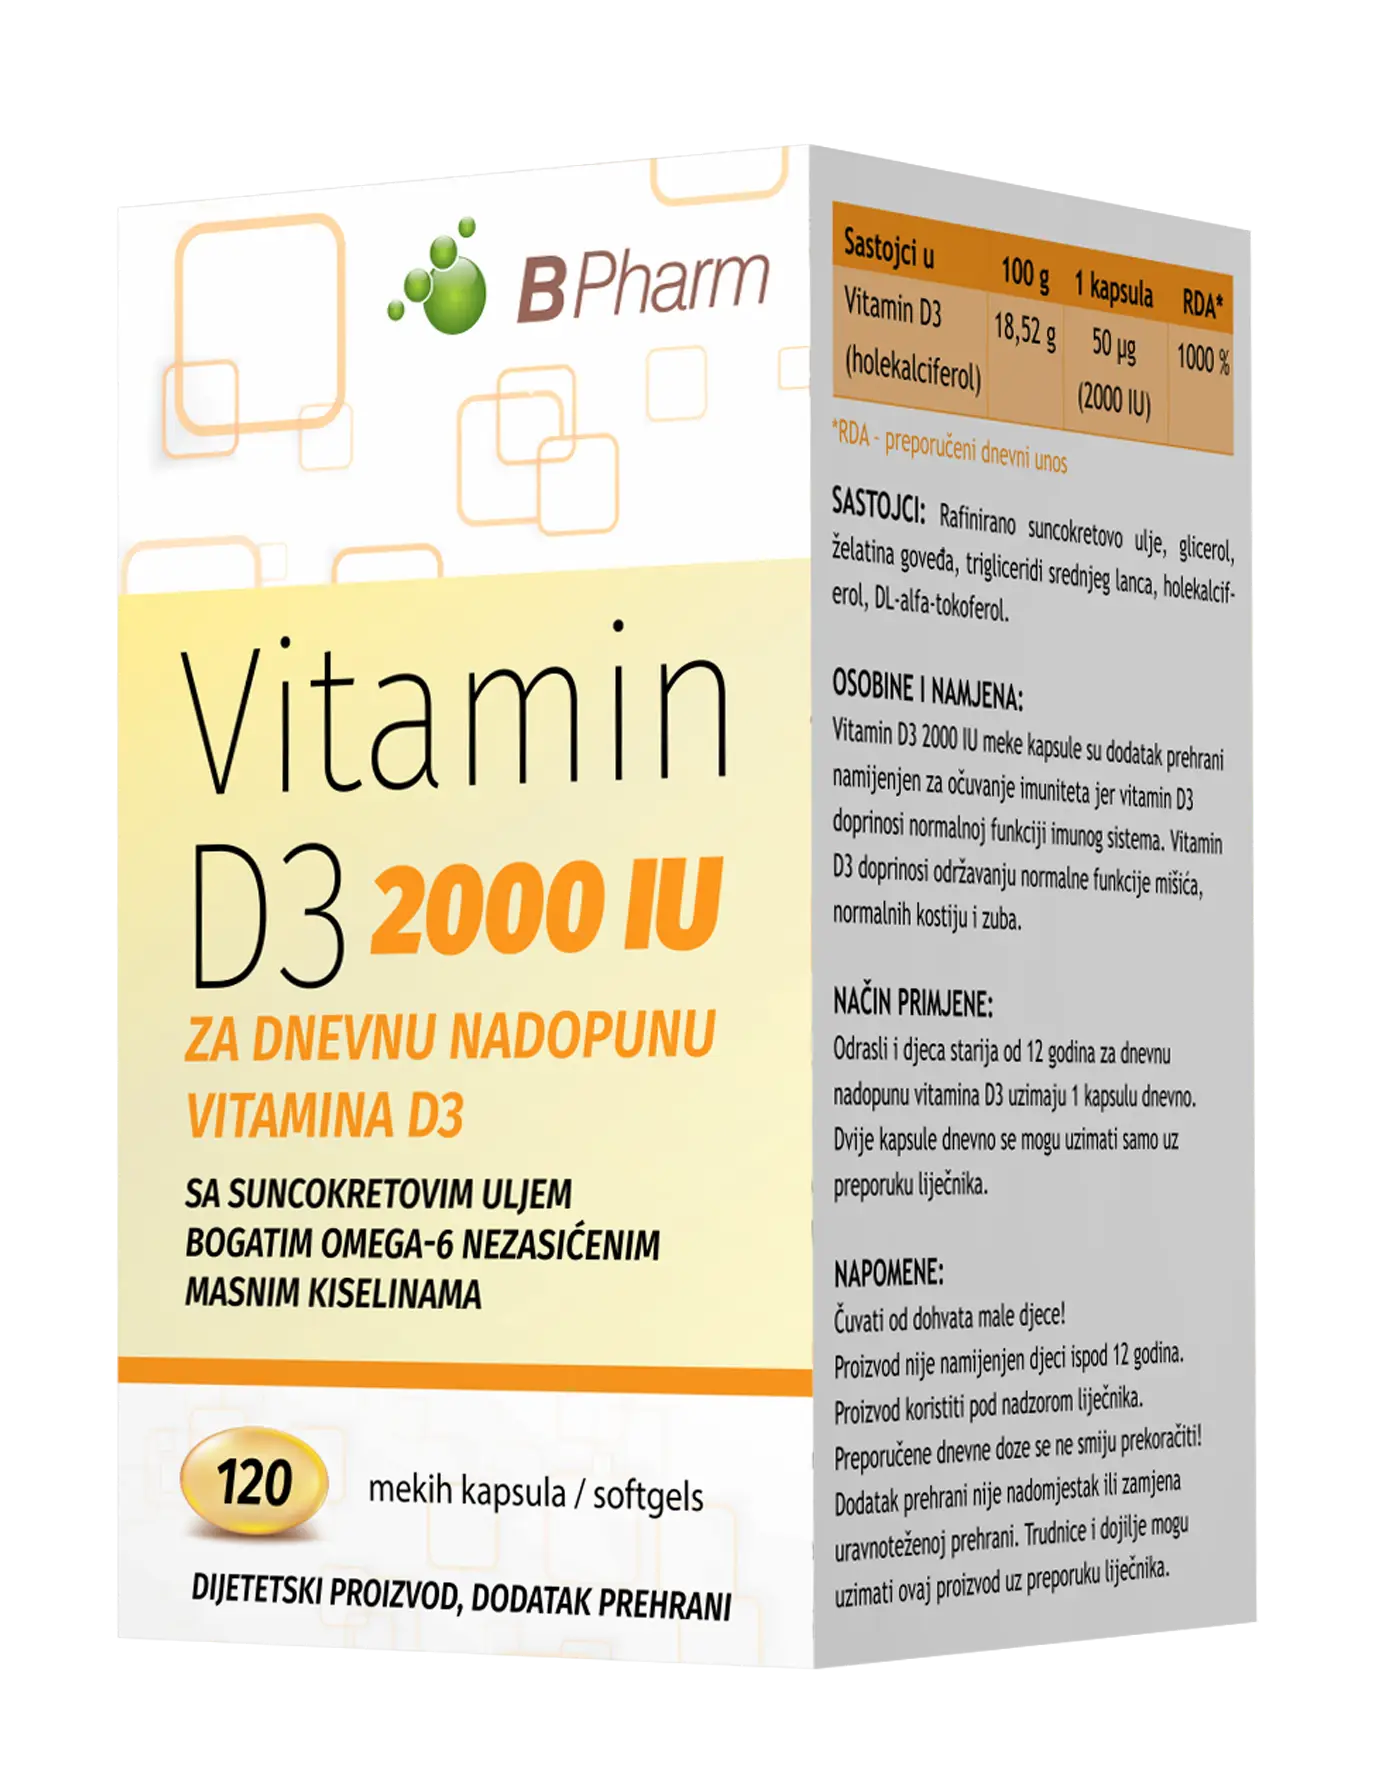 B Pharm vitamin D3